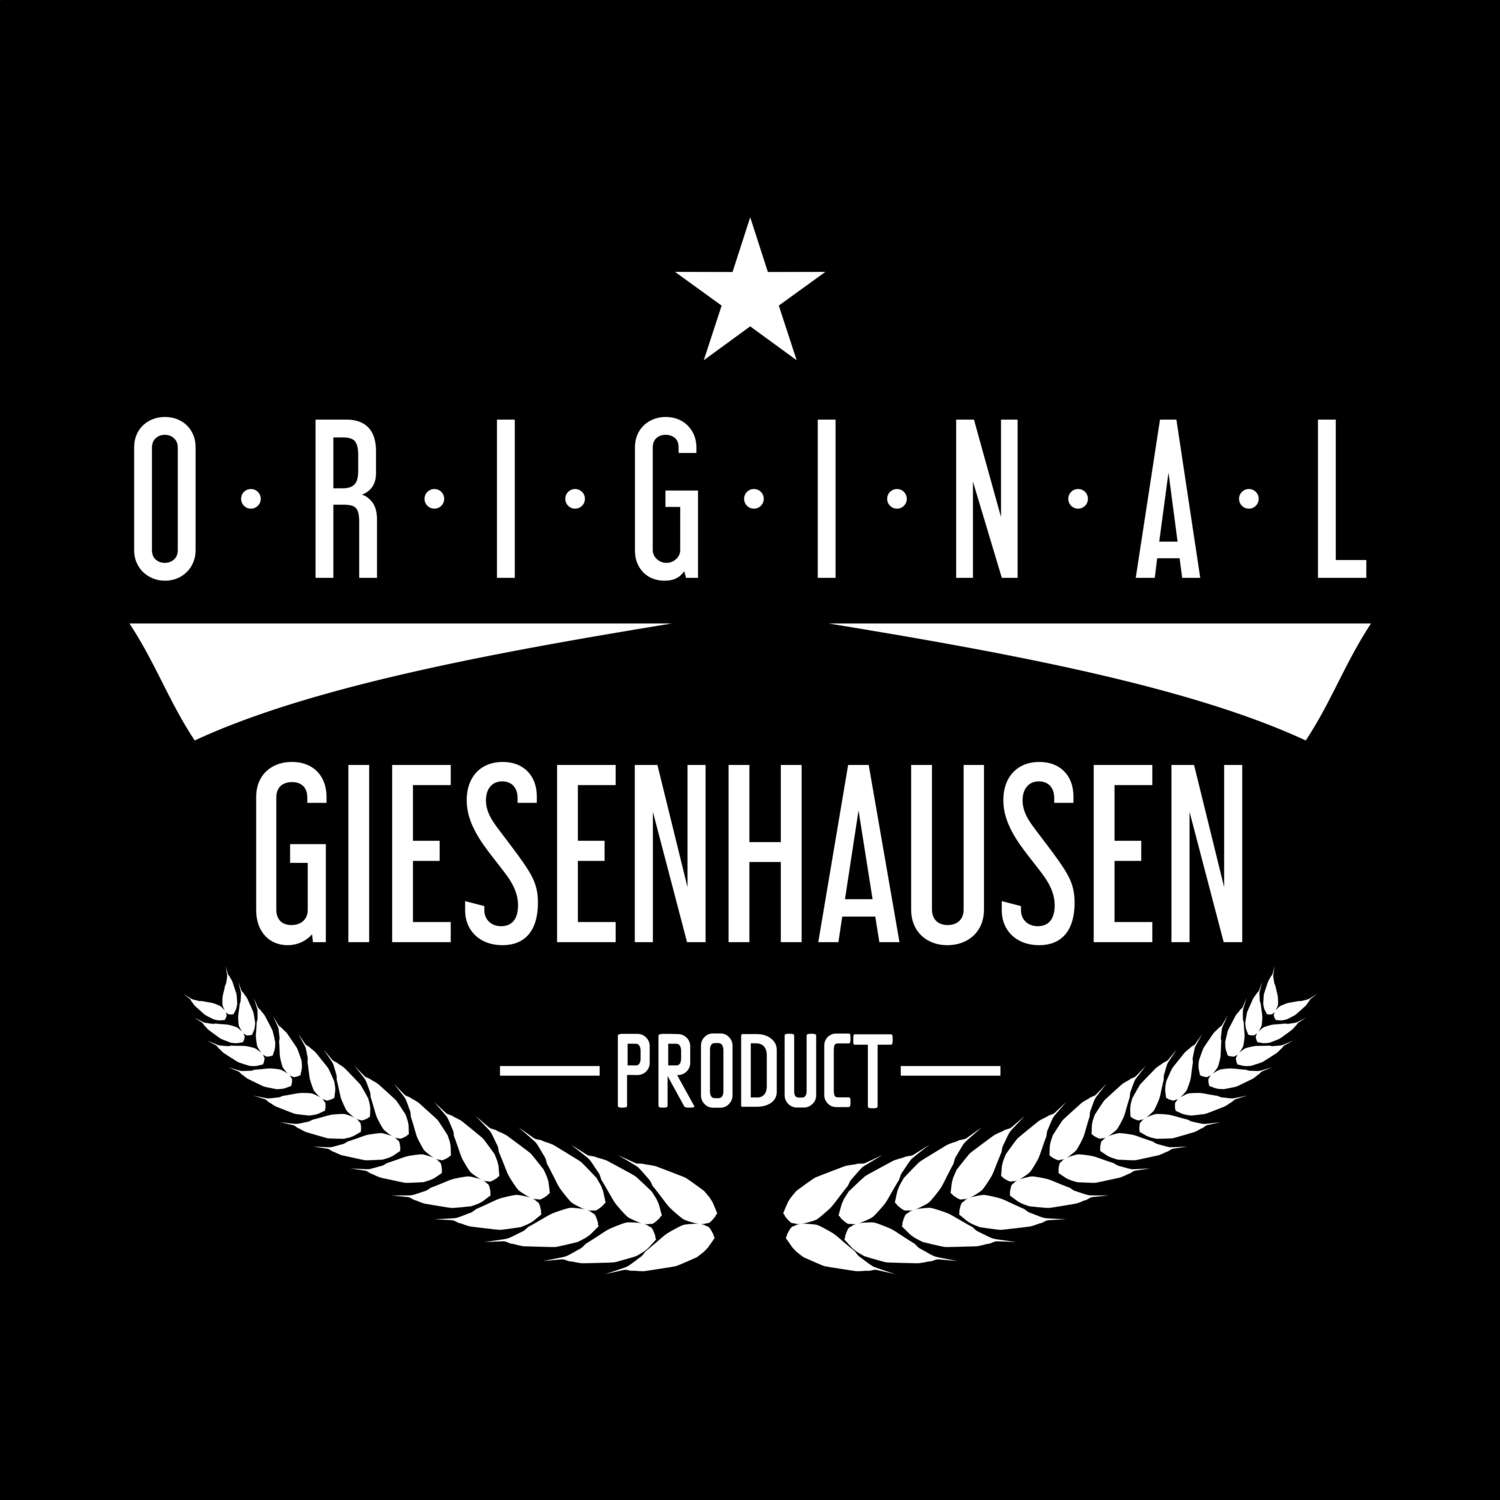 Giesenhausen T-Shirt »Original Product«